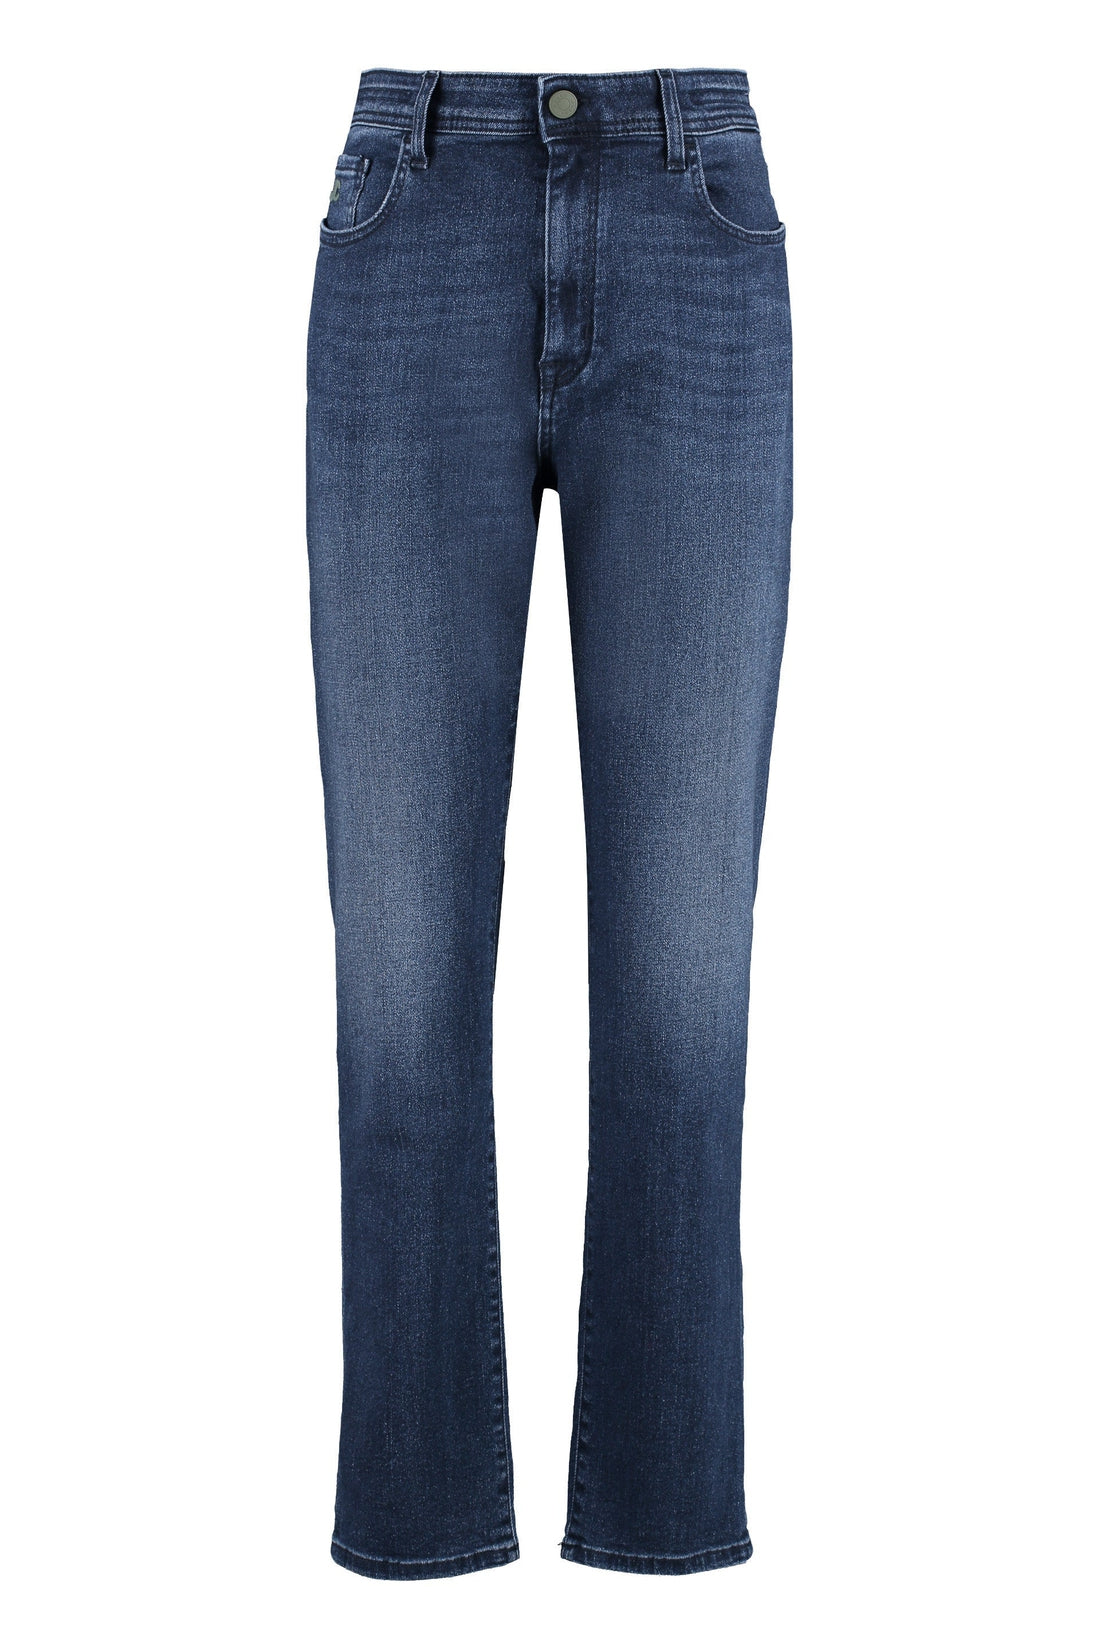 Jacob Cohen-OUTLET-SALE-Olivia high-rise slim fit jeans-ARCHIVIST